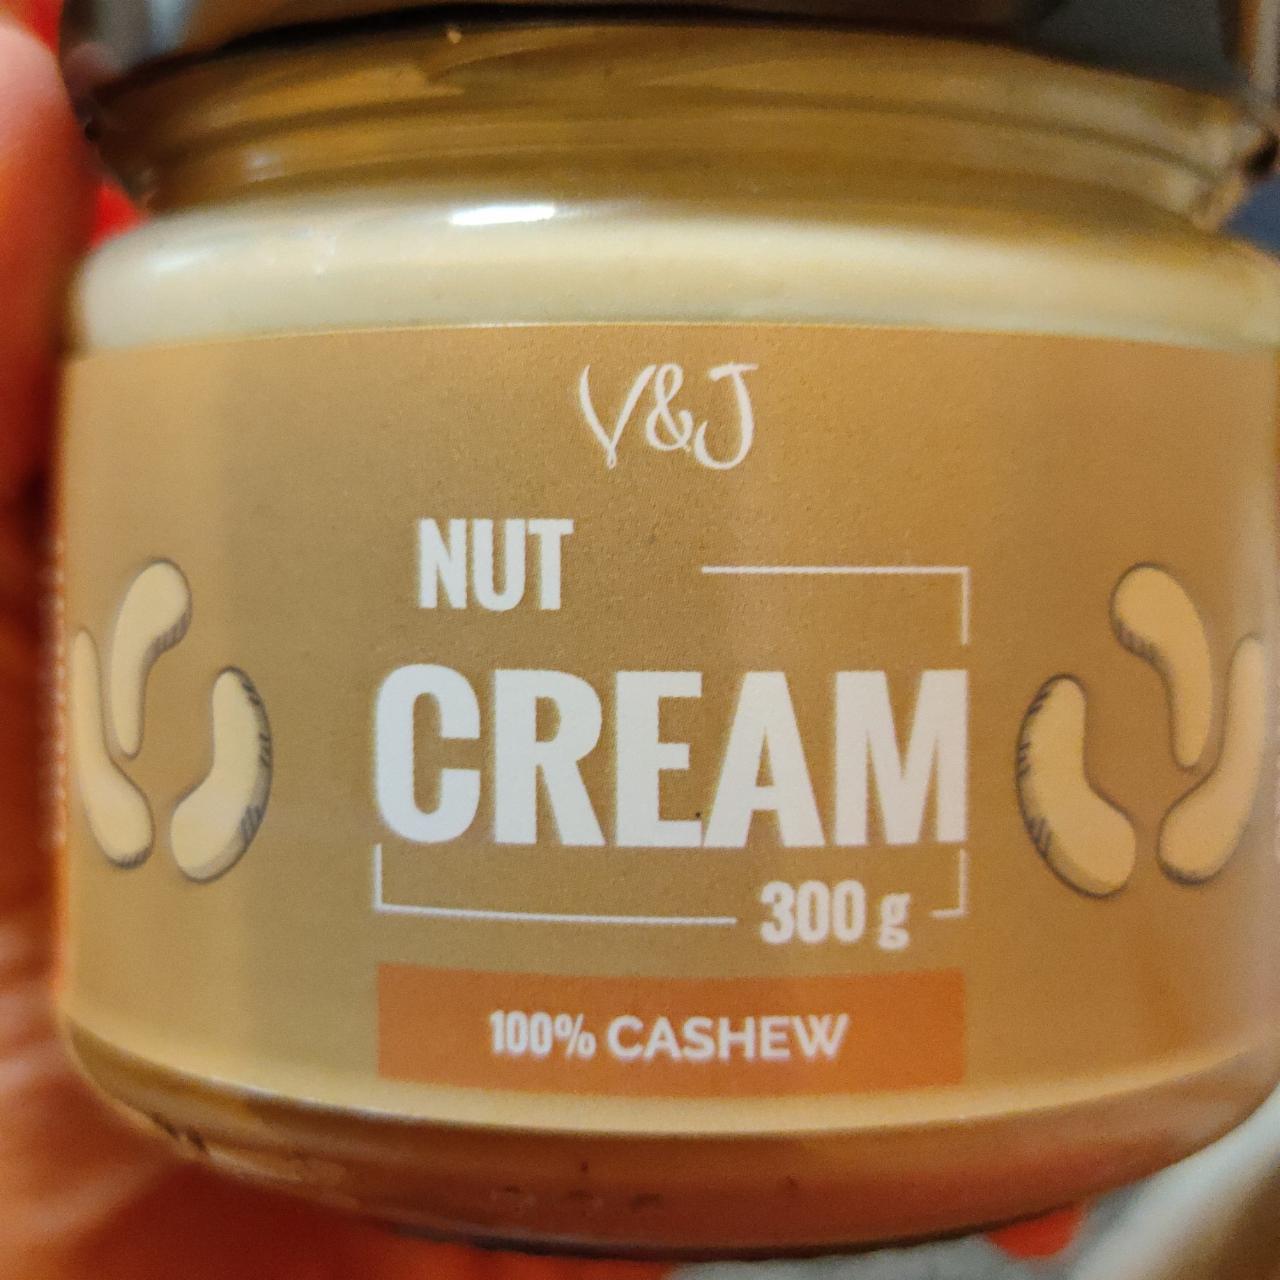 Fotografie - Nut Cream 100% Cashew crunchy V&J